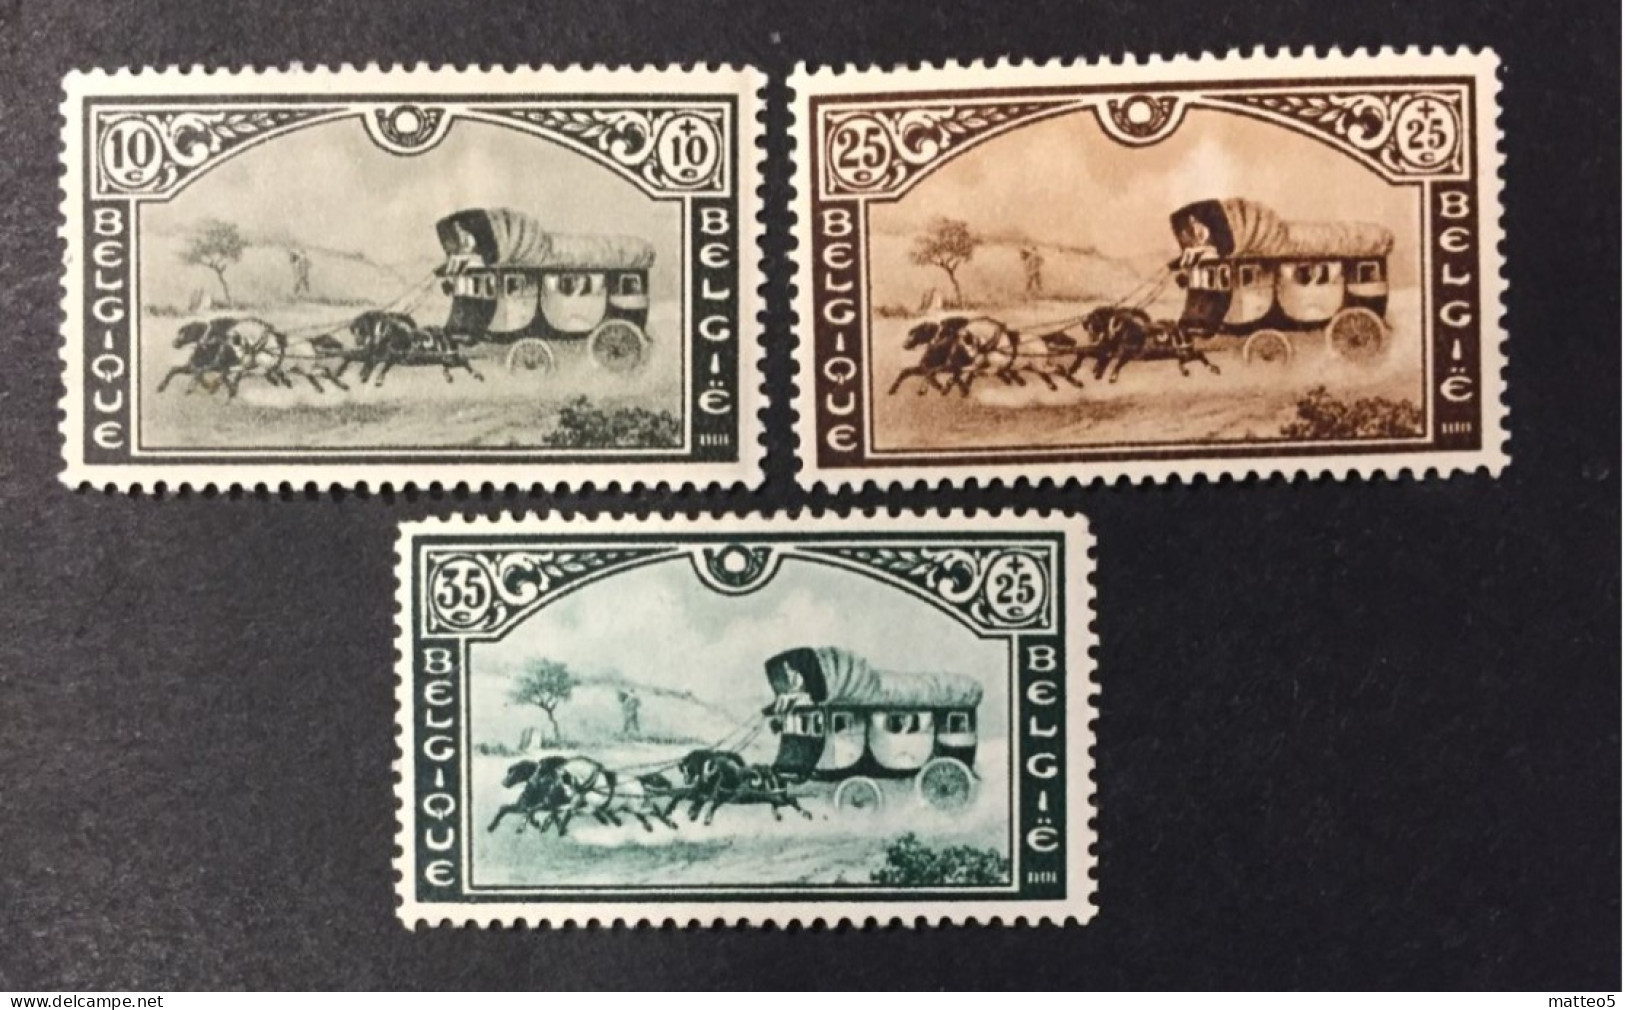 1935 - Belgium - Stage Coach, Postal Service - International Stamp Exhibition Of Belgium And Belgian Congo - Unused - Ongebruikt